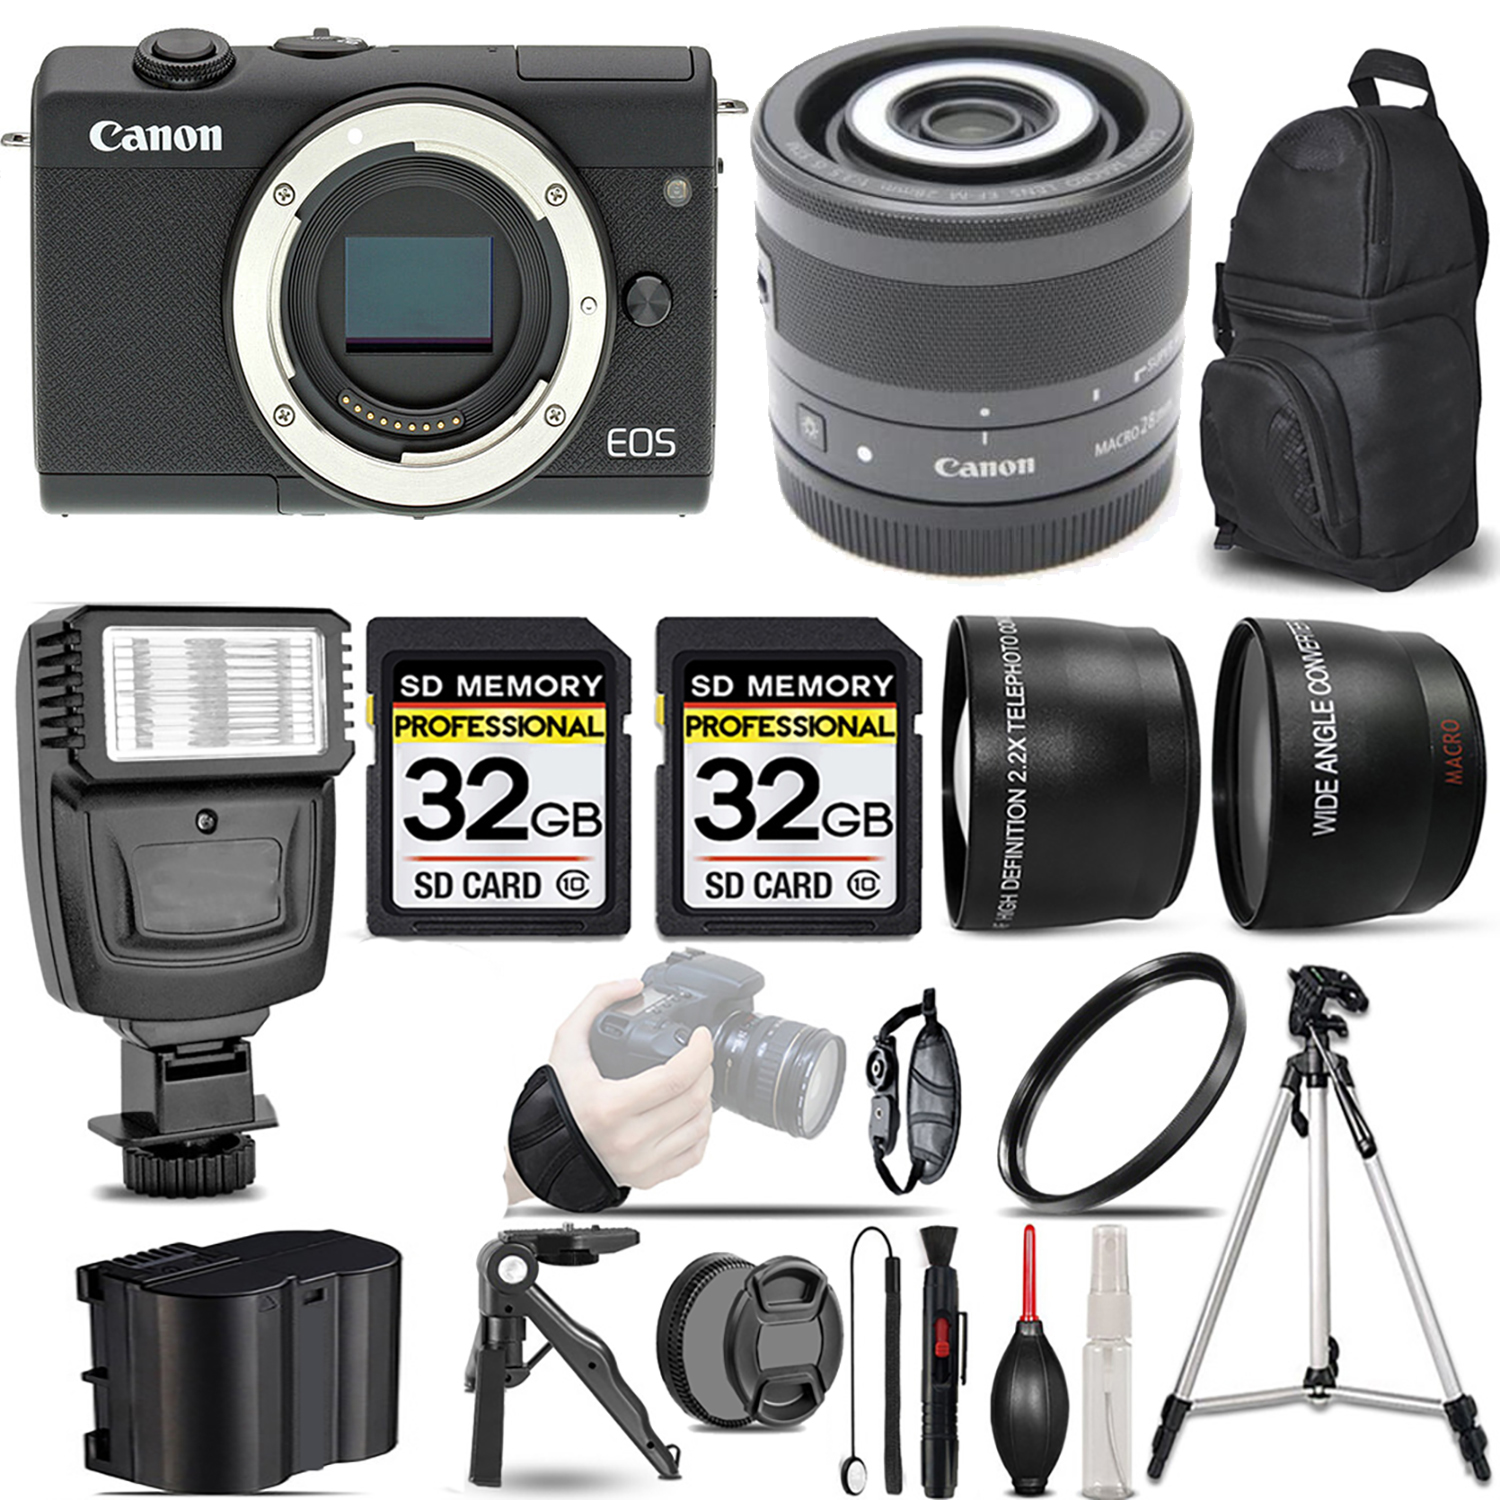 EOS M200  Camera (Black) + 28mm f/3.5 Macro IS STM Lens + Flash + 64GB - Kit *FREE SHIPPING*